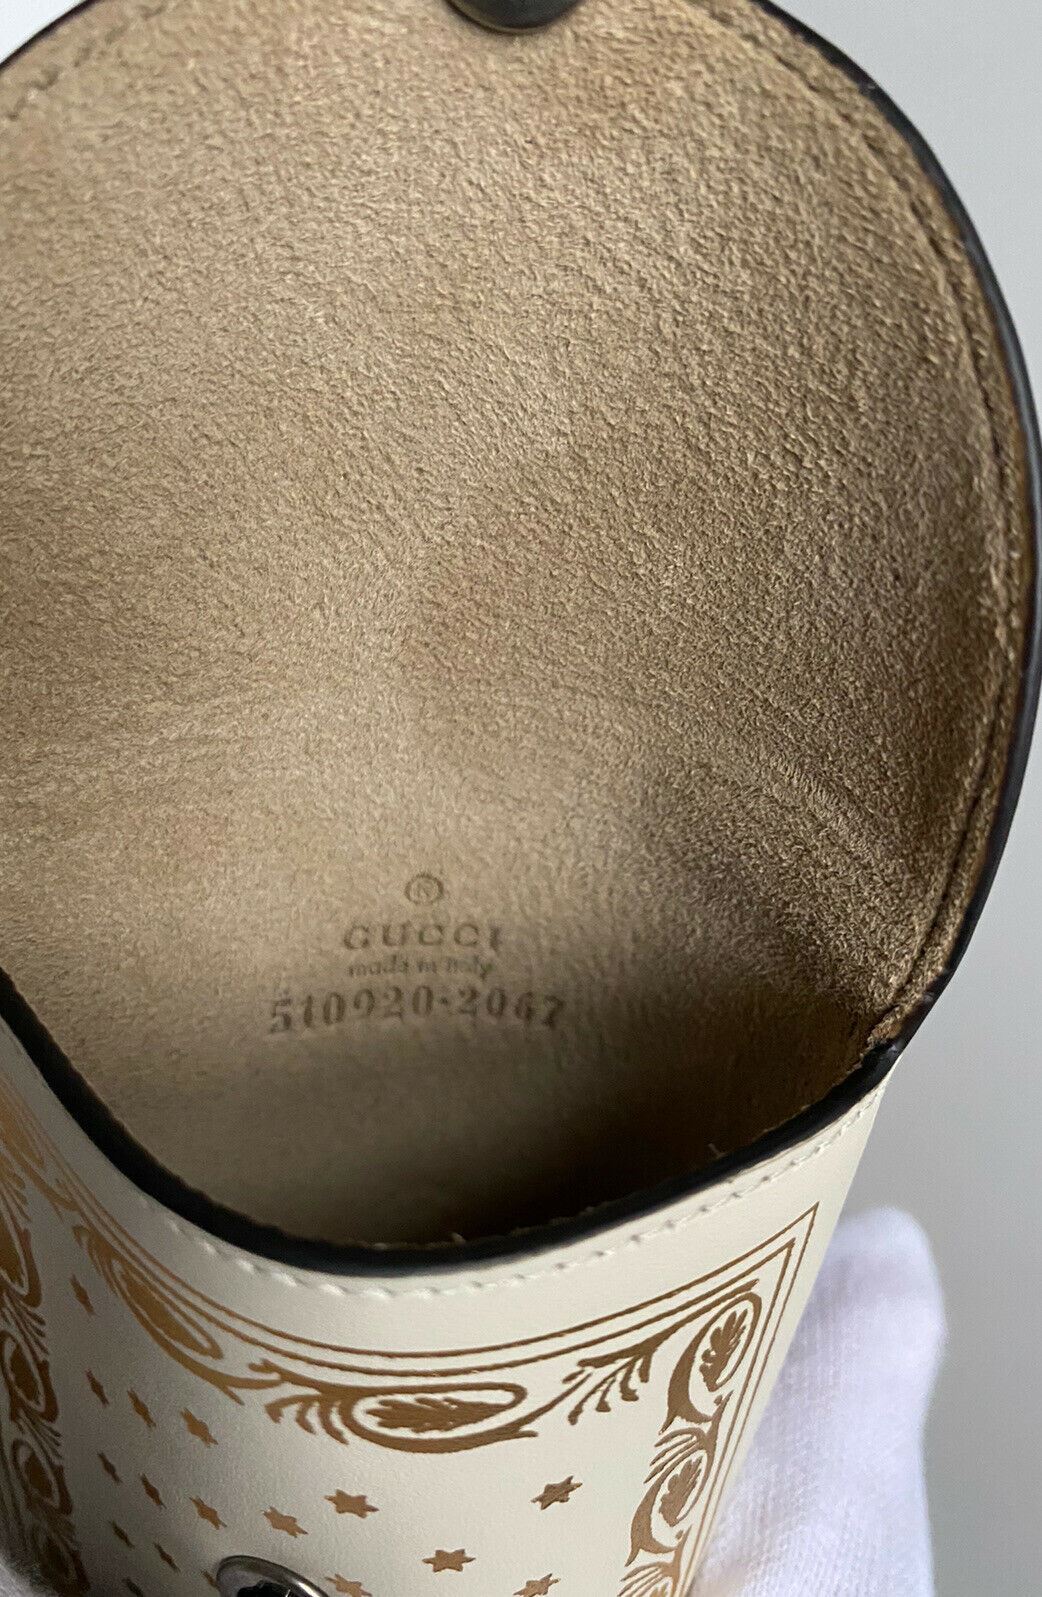 NWT Gucci SEGA White & Gold Sunglasses Case Made in Italy 510920